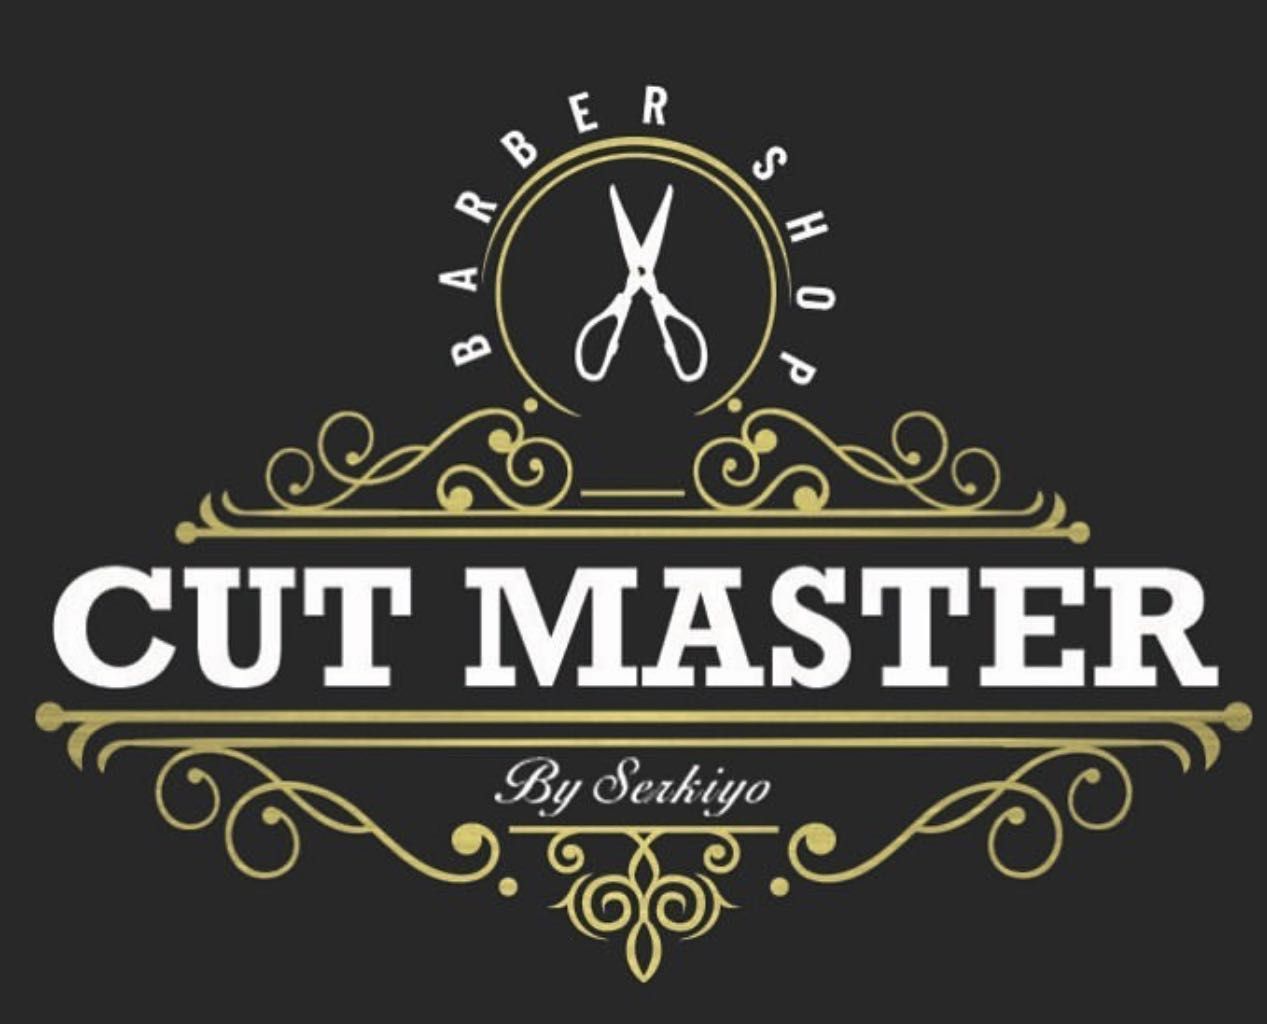 Cutmaster By Serkiyo, 83 Graham Ave, Cutmaster By Serkiyo, Brooklyn, 11206